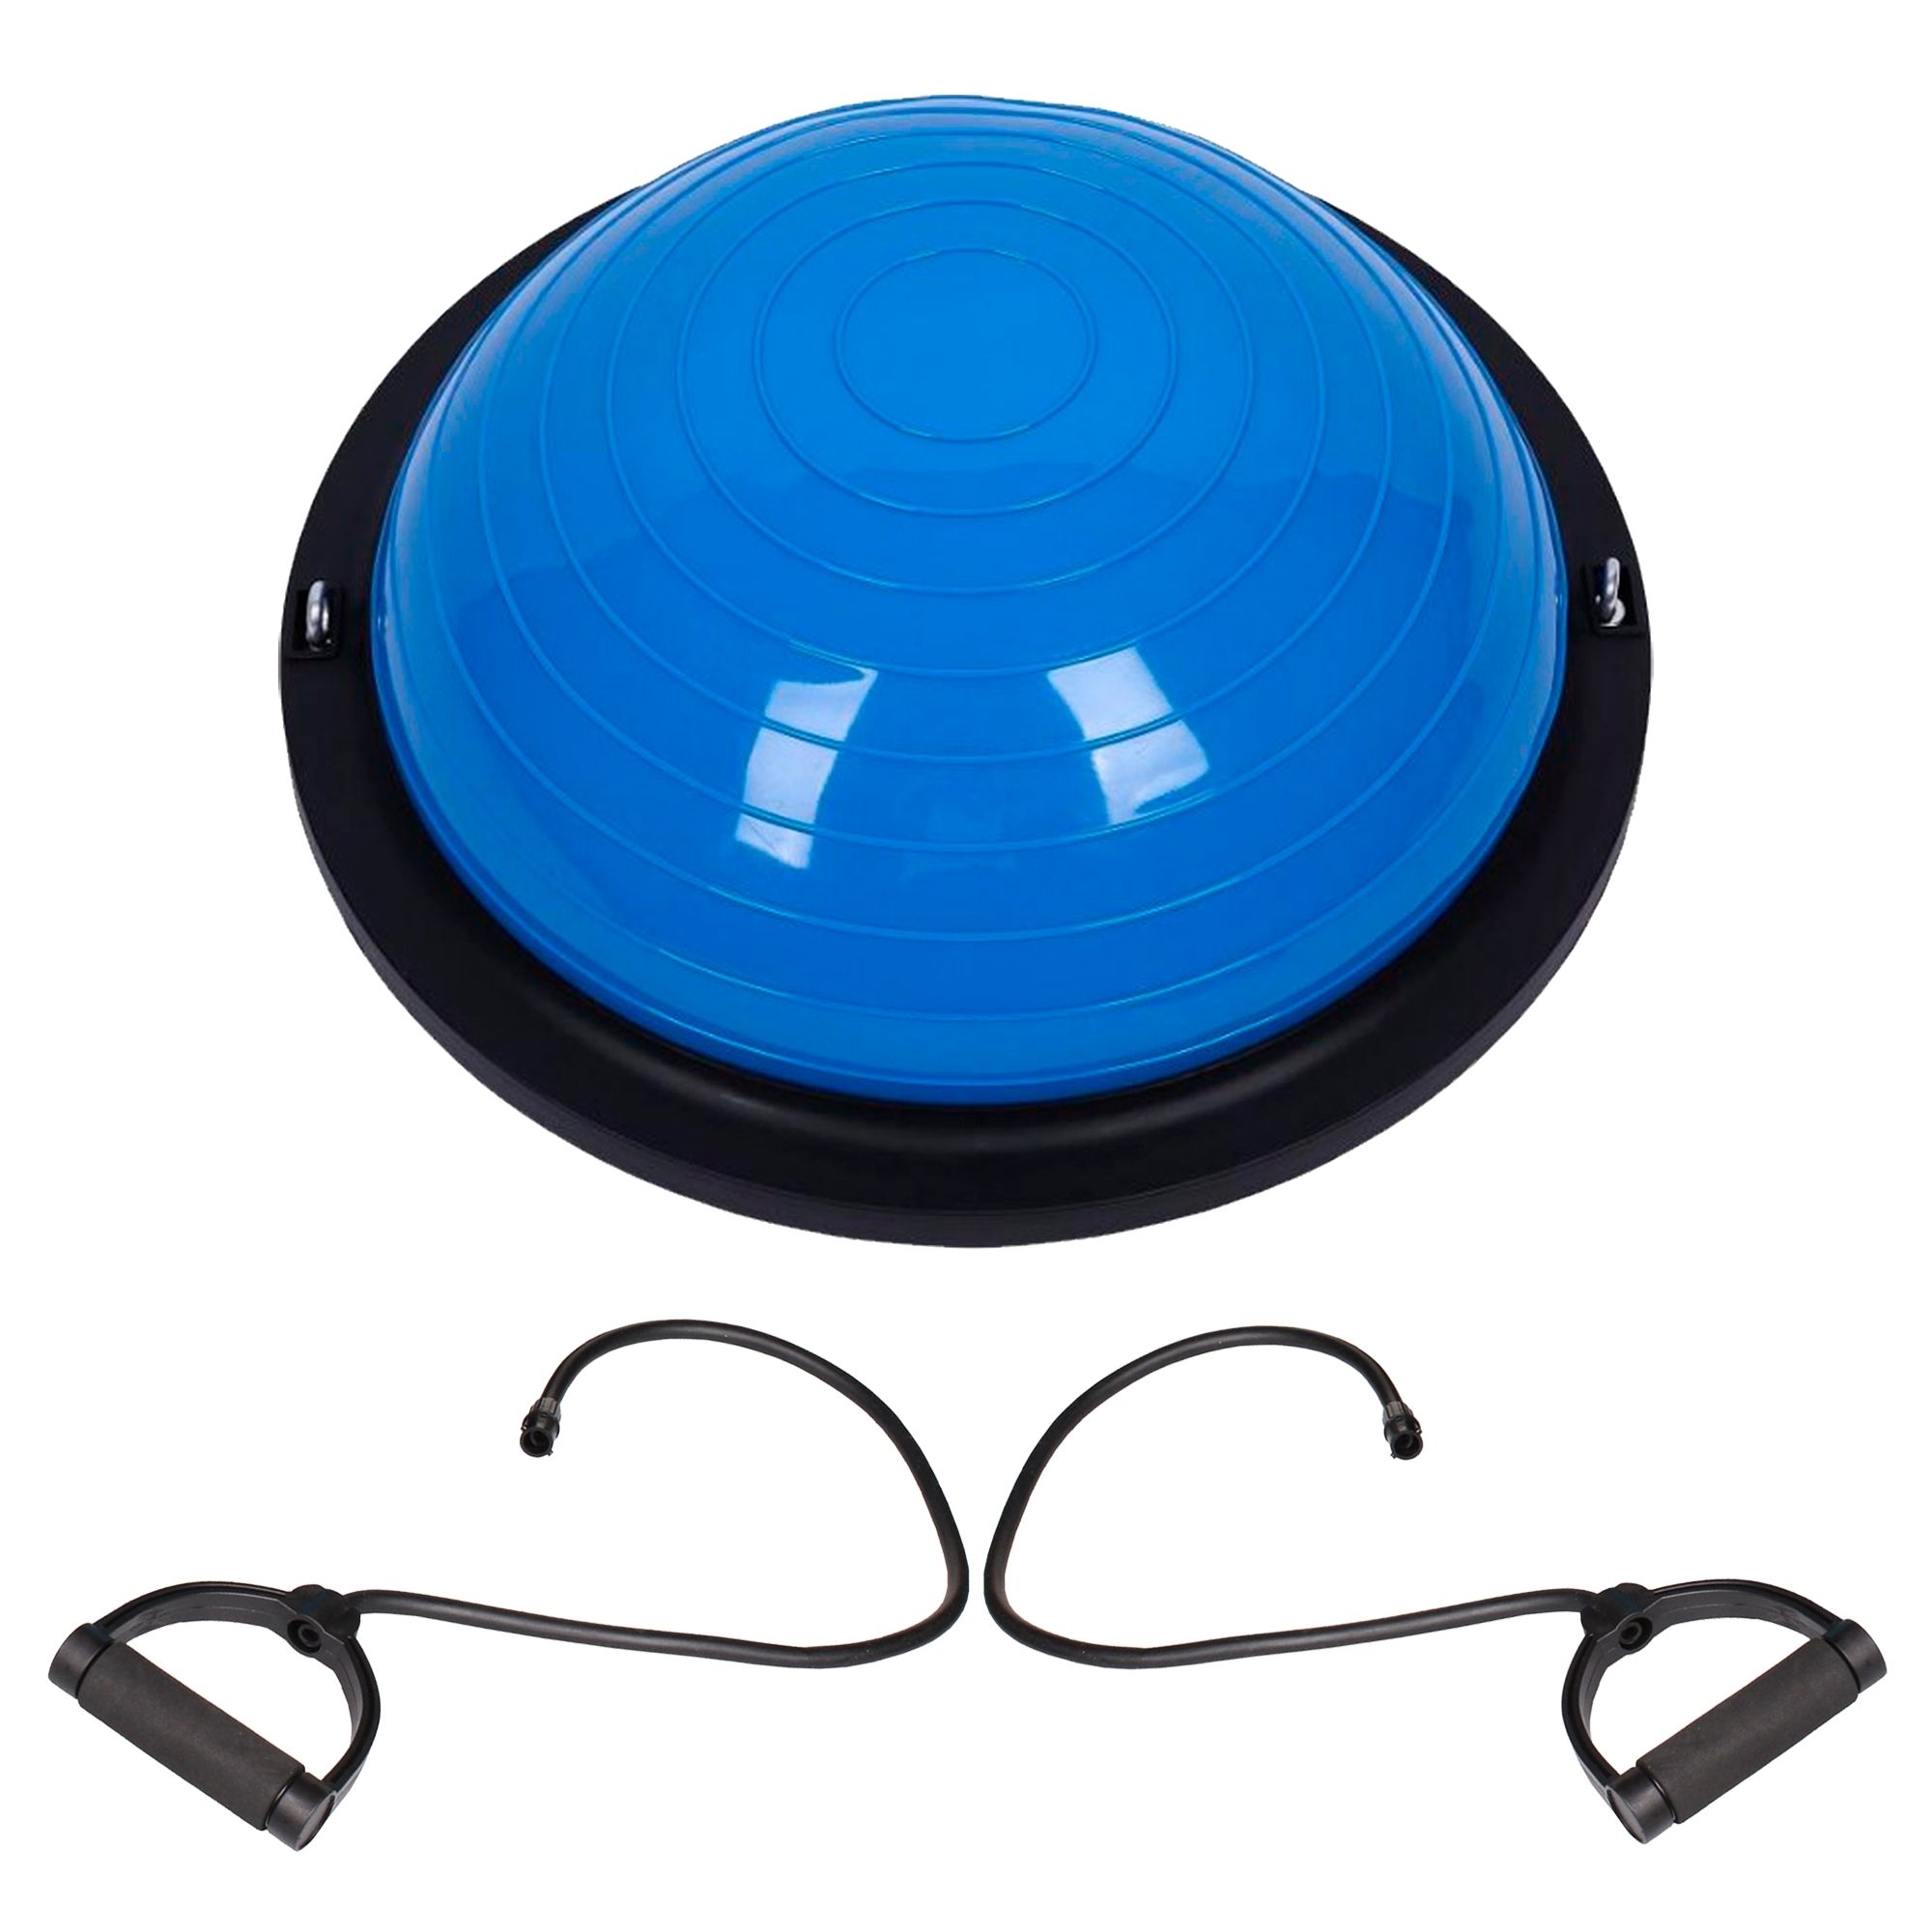 Meia Bola Bosu com Alças Extensoras e Bomba - Bosu Ball Azul